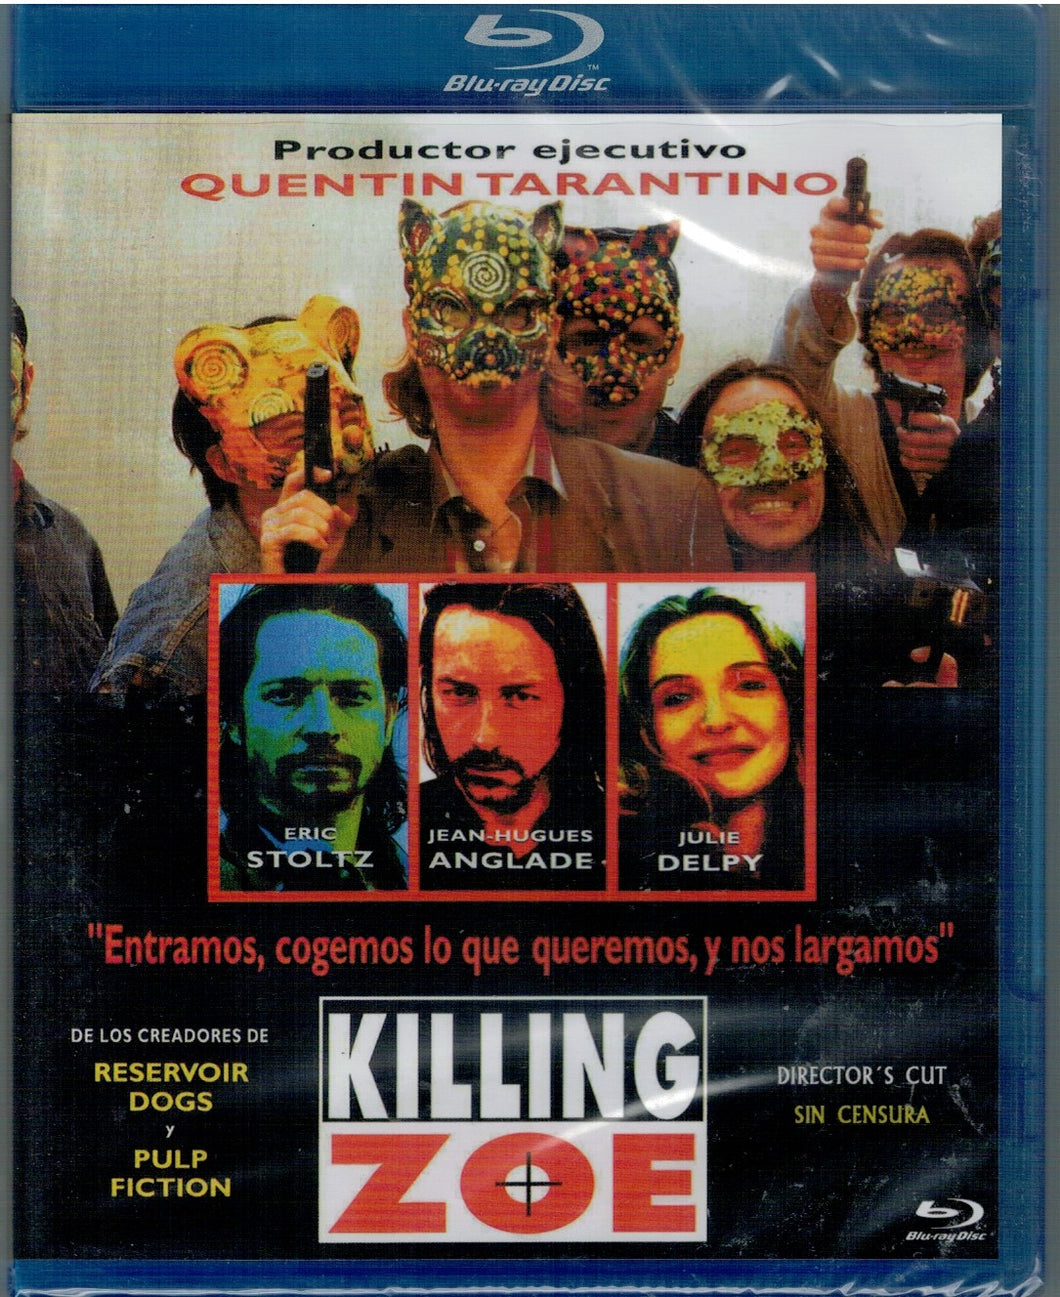 Killing Zoe (Director's Cut - Sin censura) (Bluray Nuevo)